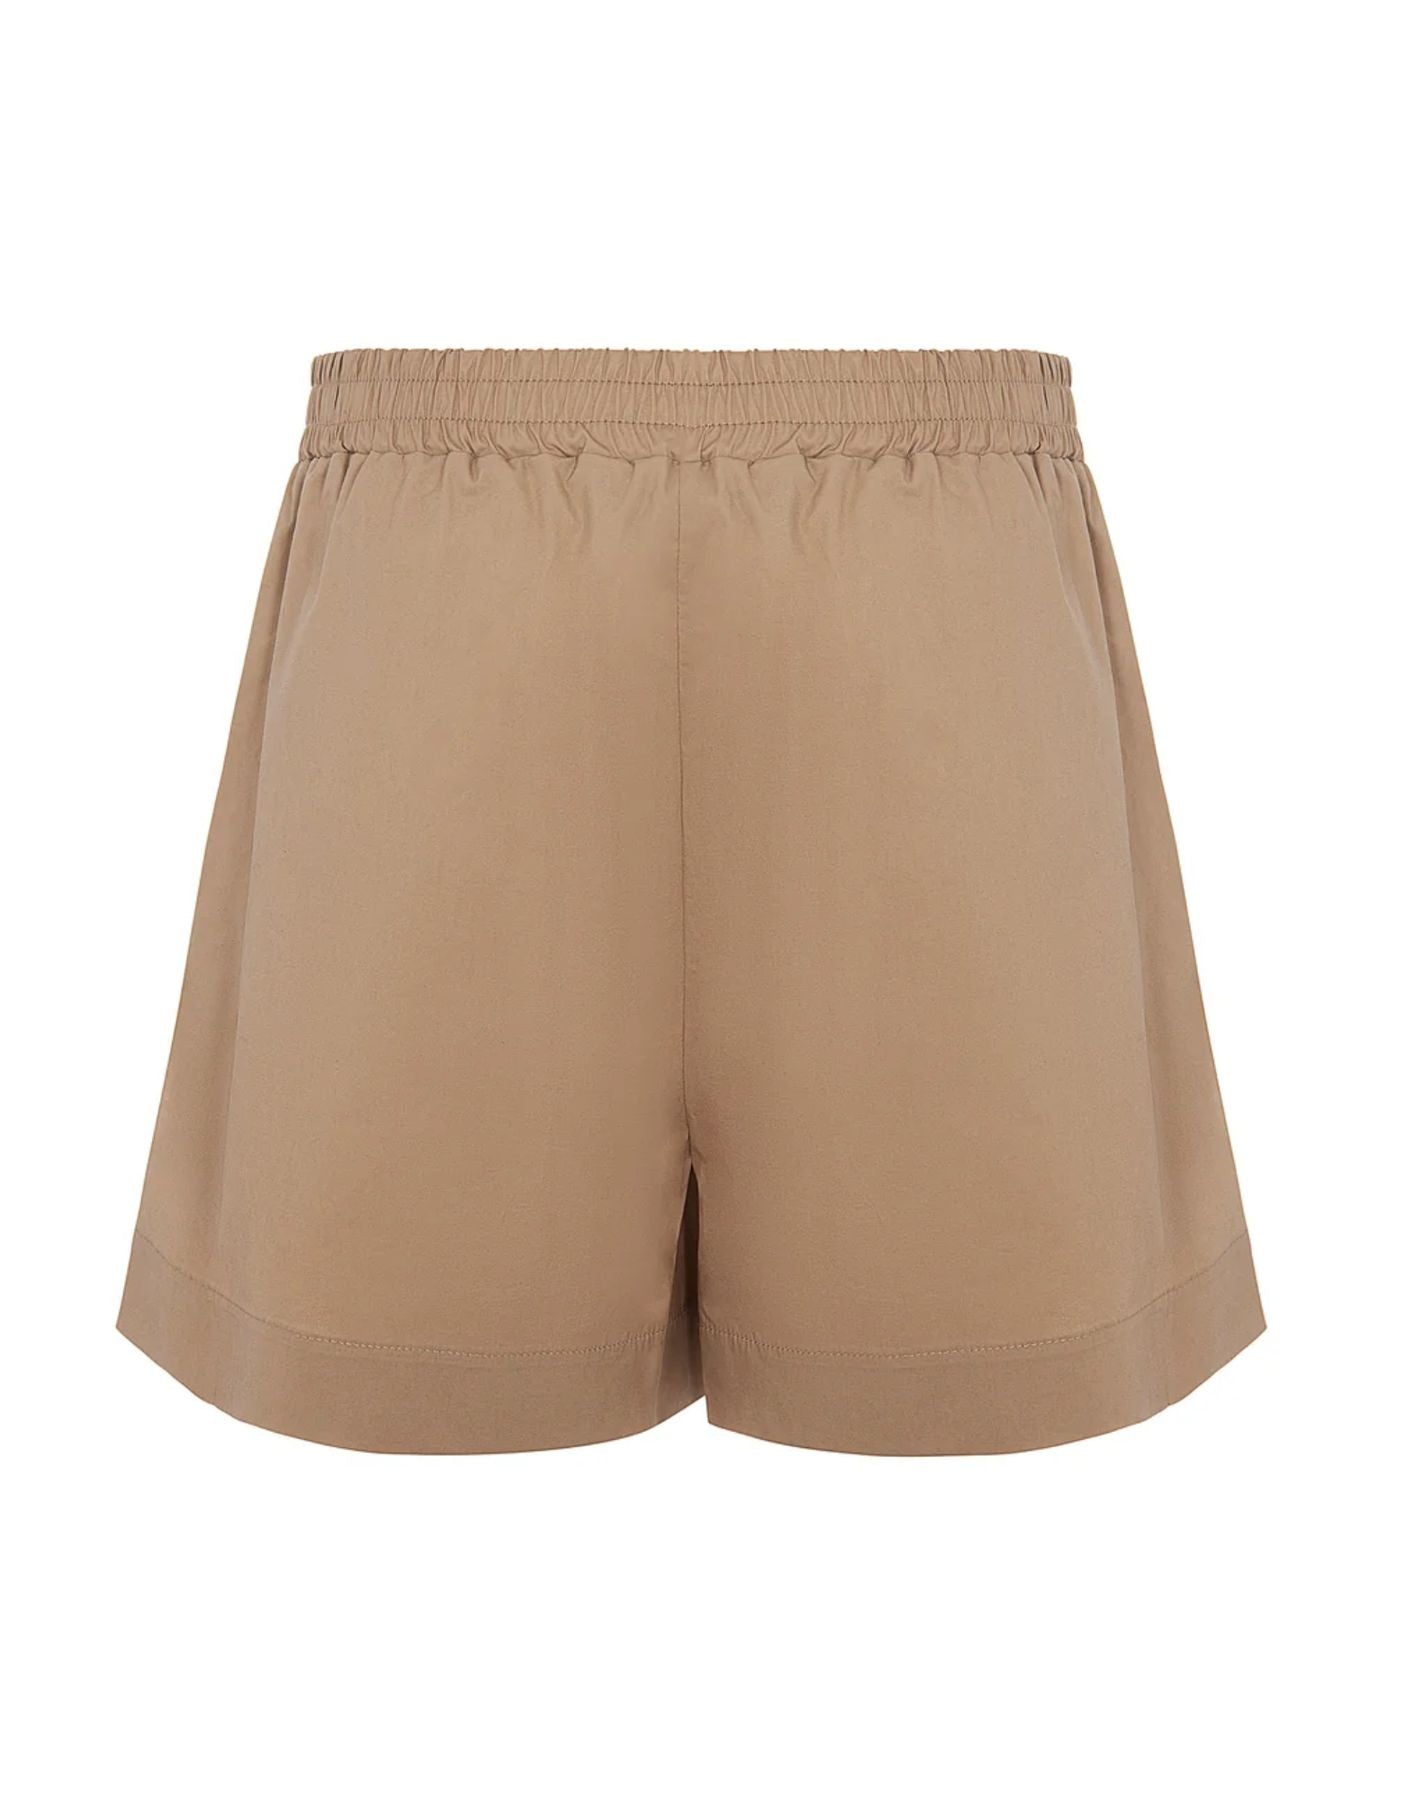 Shorts for woman SHKD05121 SABBIA Akep